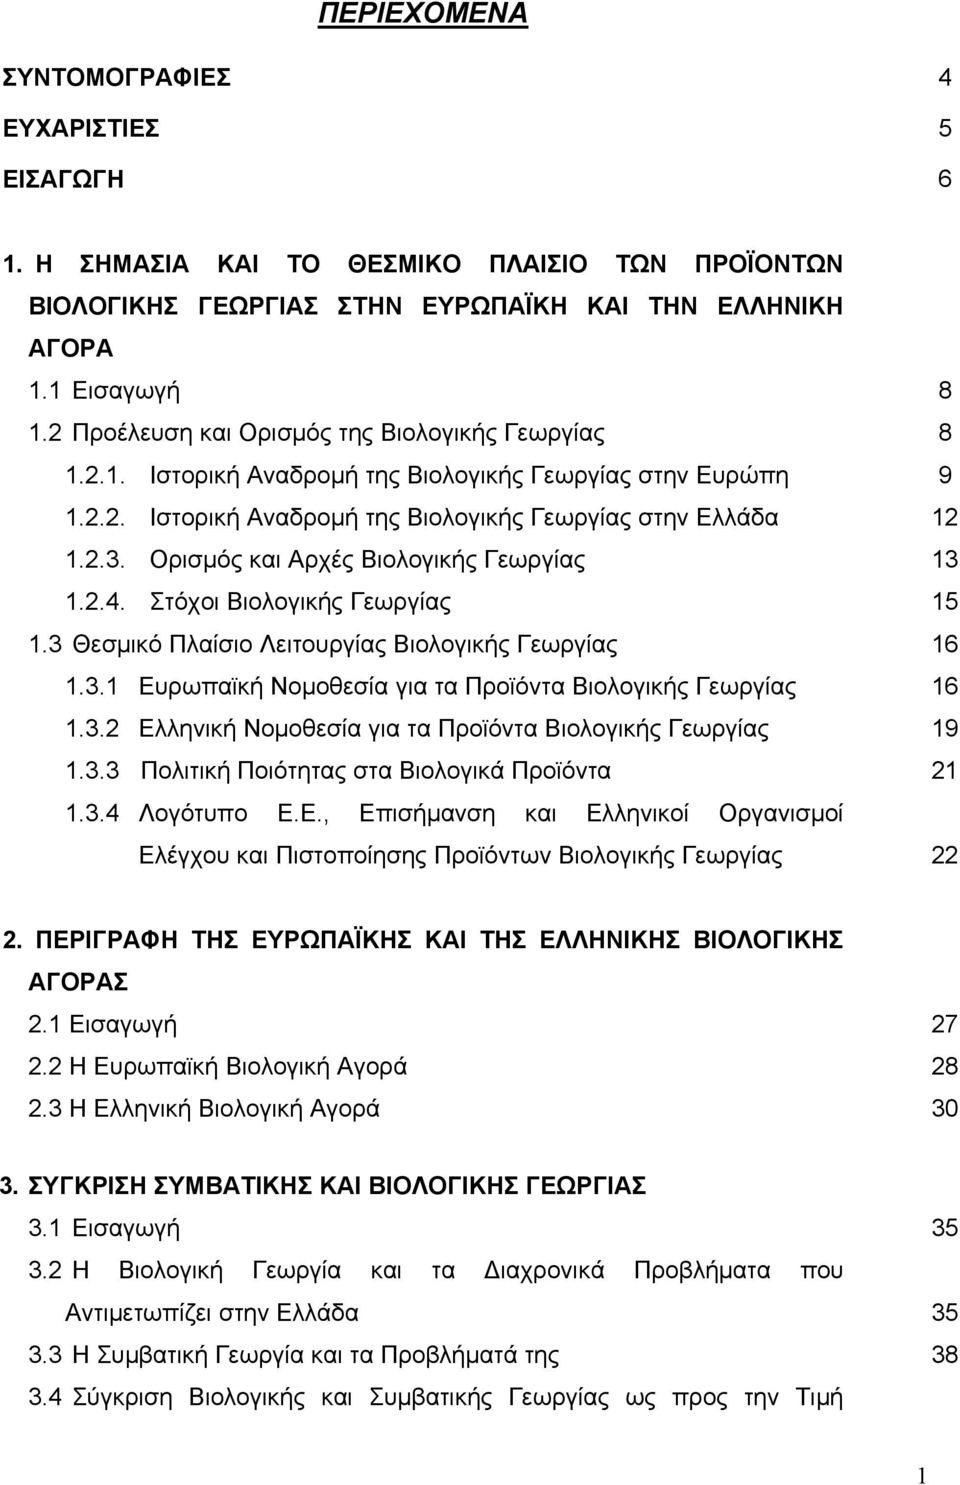 Ορισμός και Αρχές Βιολογικής Γεωργίας 1.2.4. Στόχοι Βιολογικής Γεωργίας 1.3 Θεσμικό Πλαίσιο Λειτουργίας Βιολογικής Γεωργίας 1.3.1 Ευρωπαϊκή Νομοθεσία για τα Προϊόντα Βιολογικής Γεωργίας 1.3.2 Ελληνική Νομοθεσία για τα Προϊόντα Βιολογικής Γεωργίας 1.